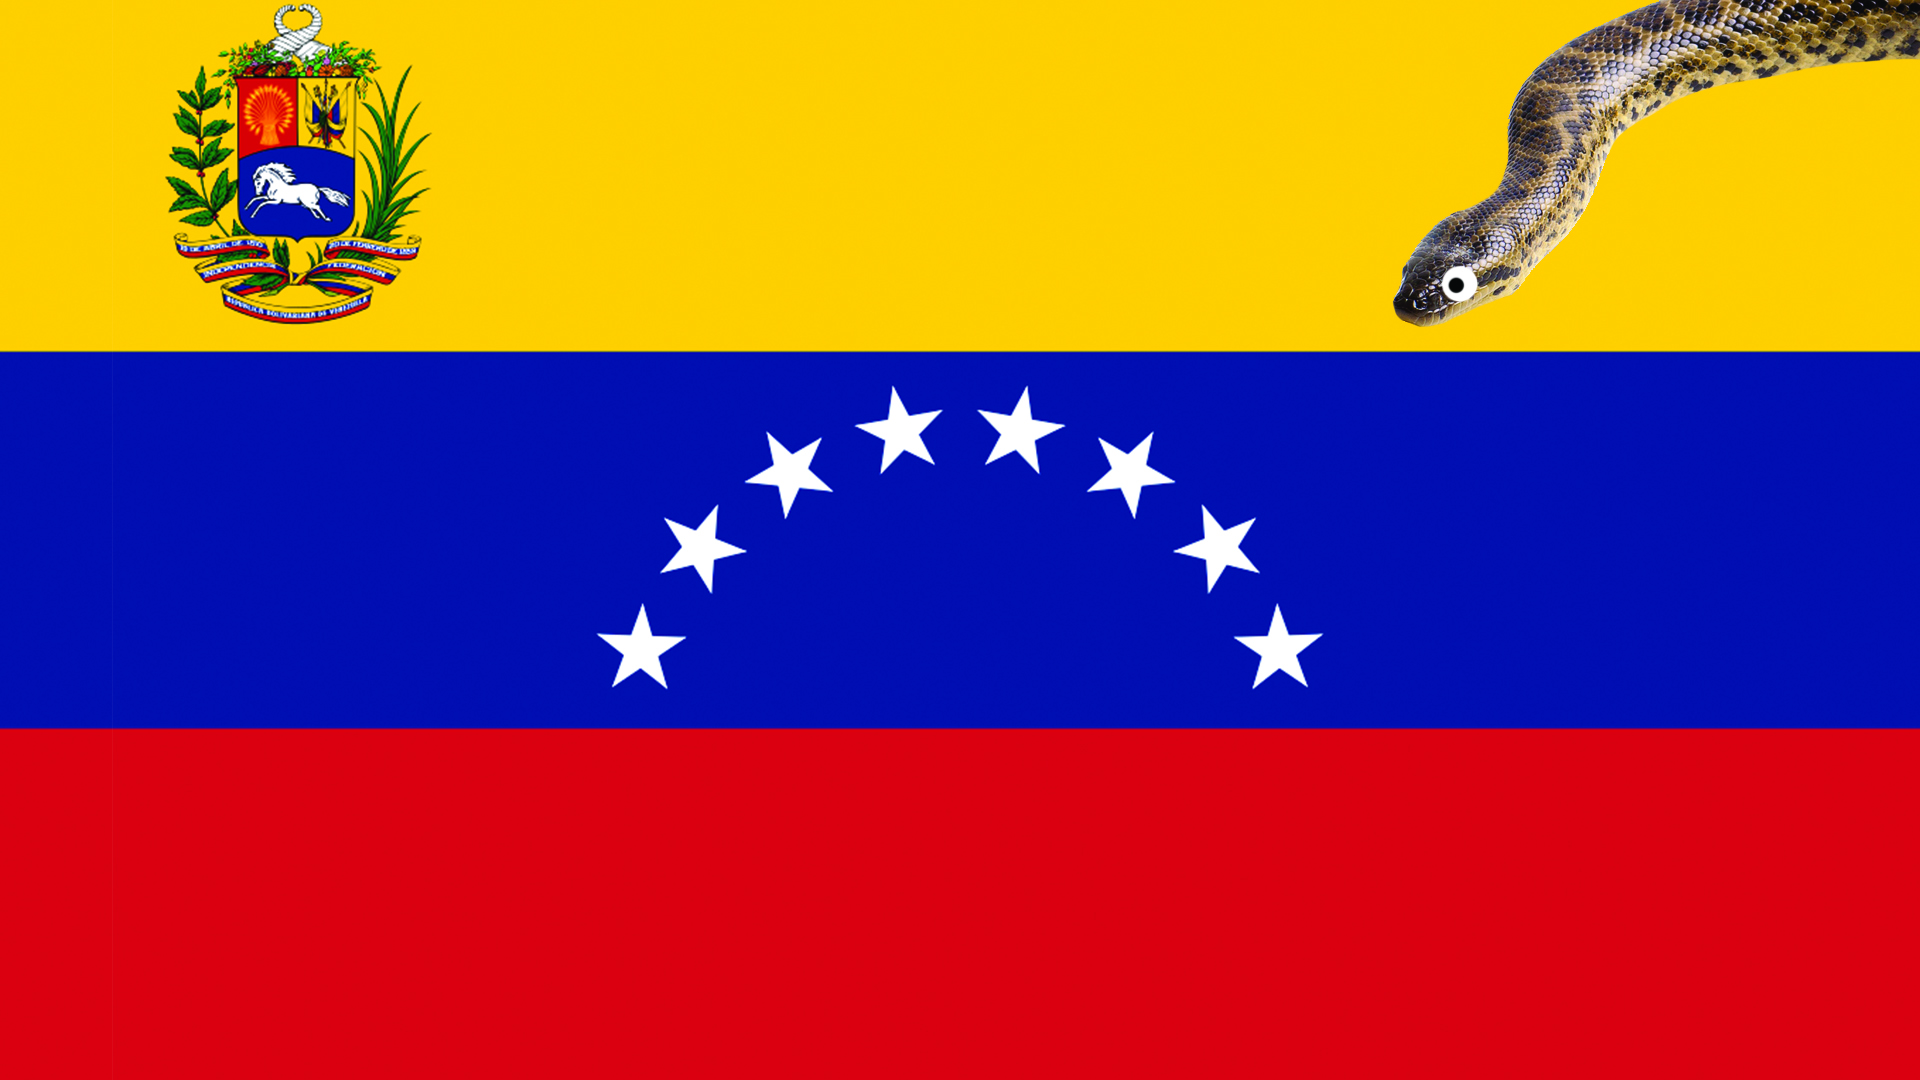 A snake slithering on a Venezuelan flag